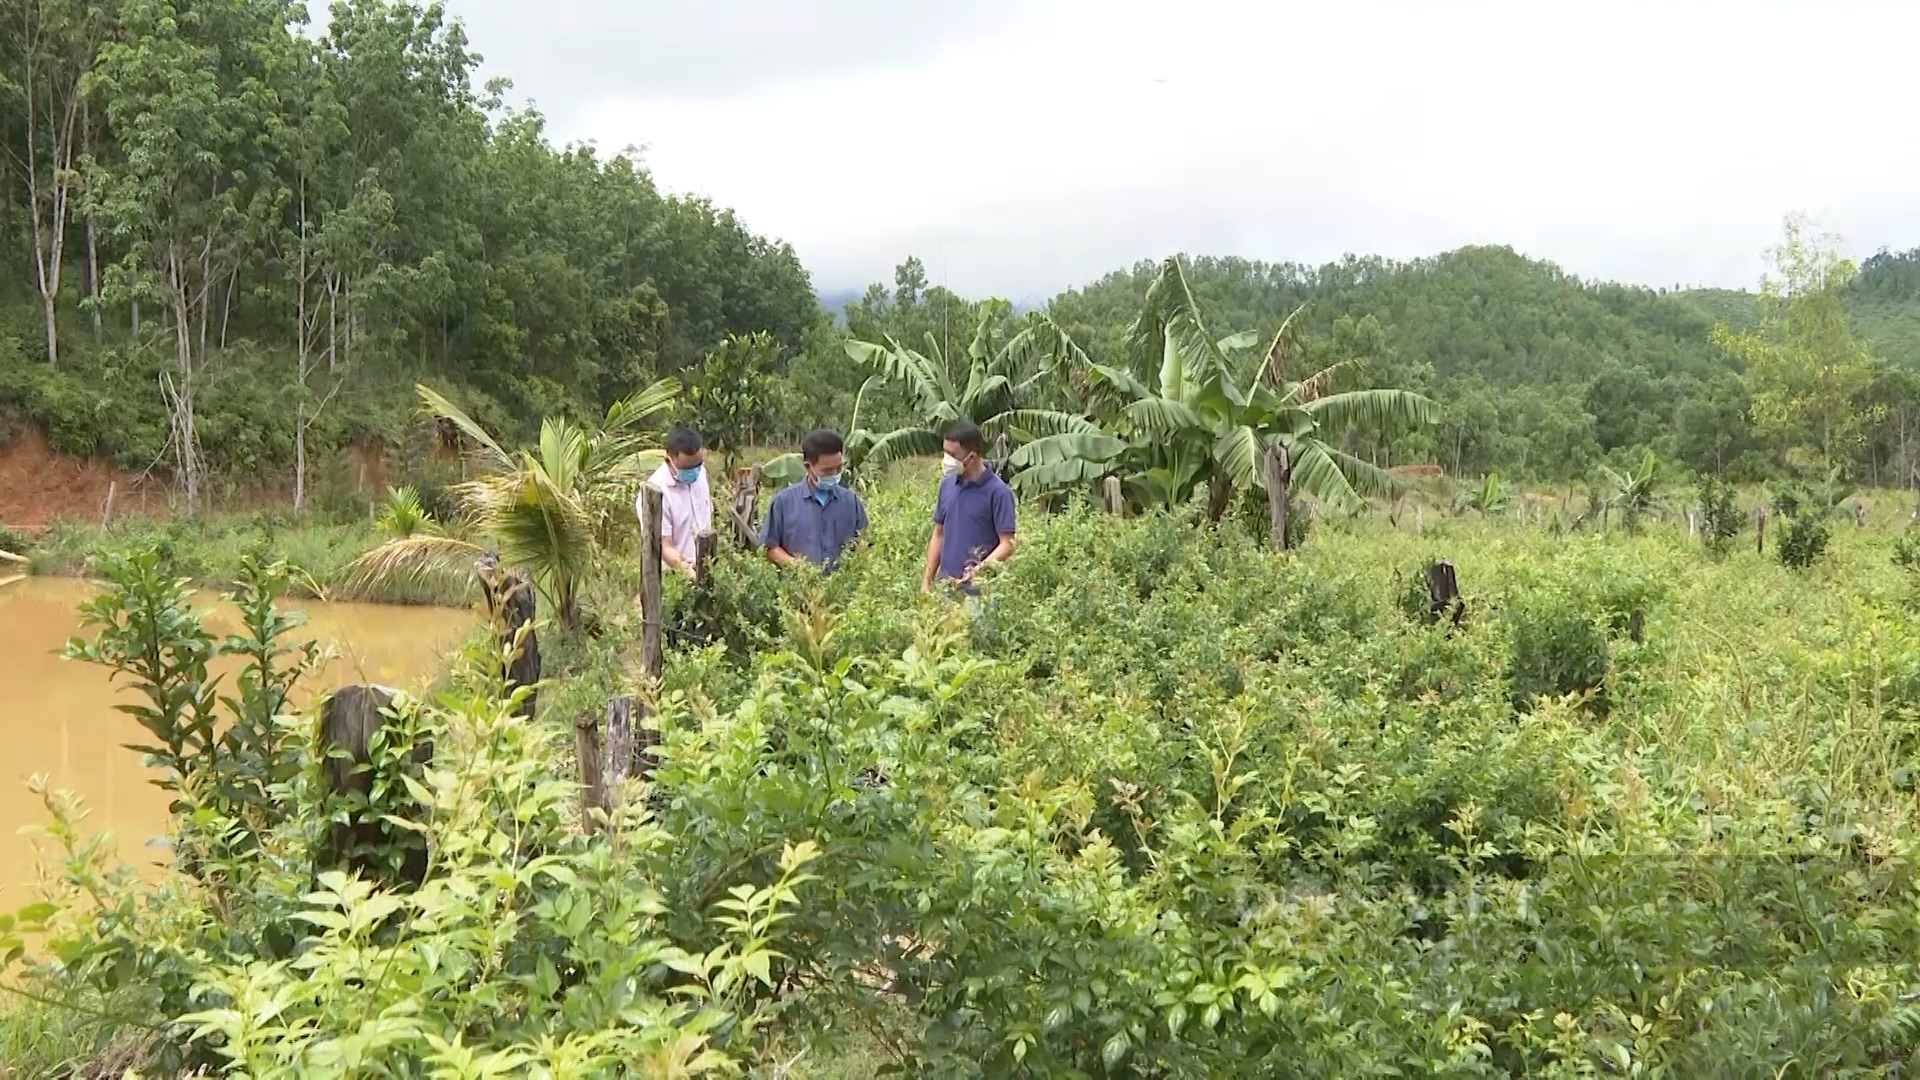 Quảng Nam: Nông dân miền núi trồng cây ăn quả, cây dược liệu, mỗi năm thu lãi hàng trăm triệu đồng - Ảnh 1.